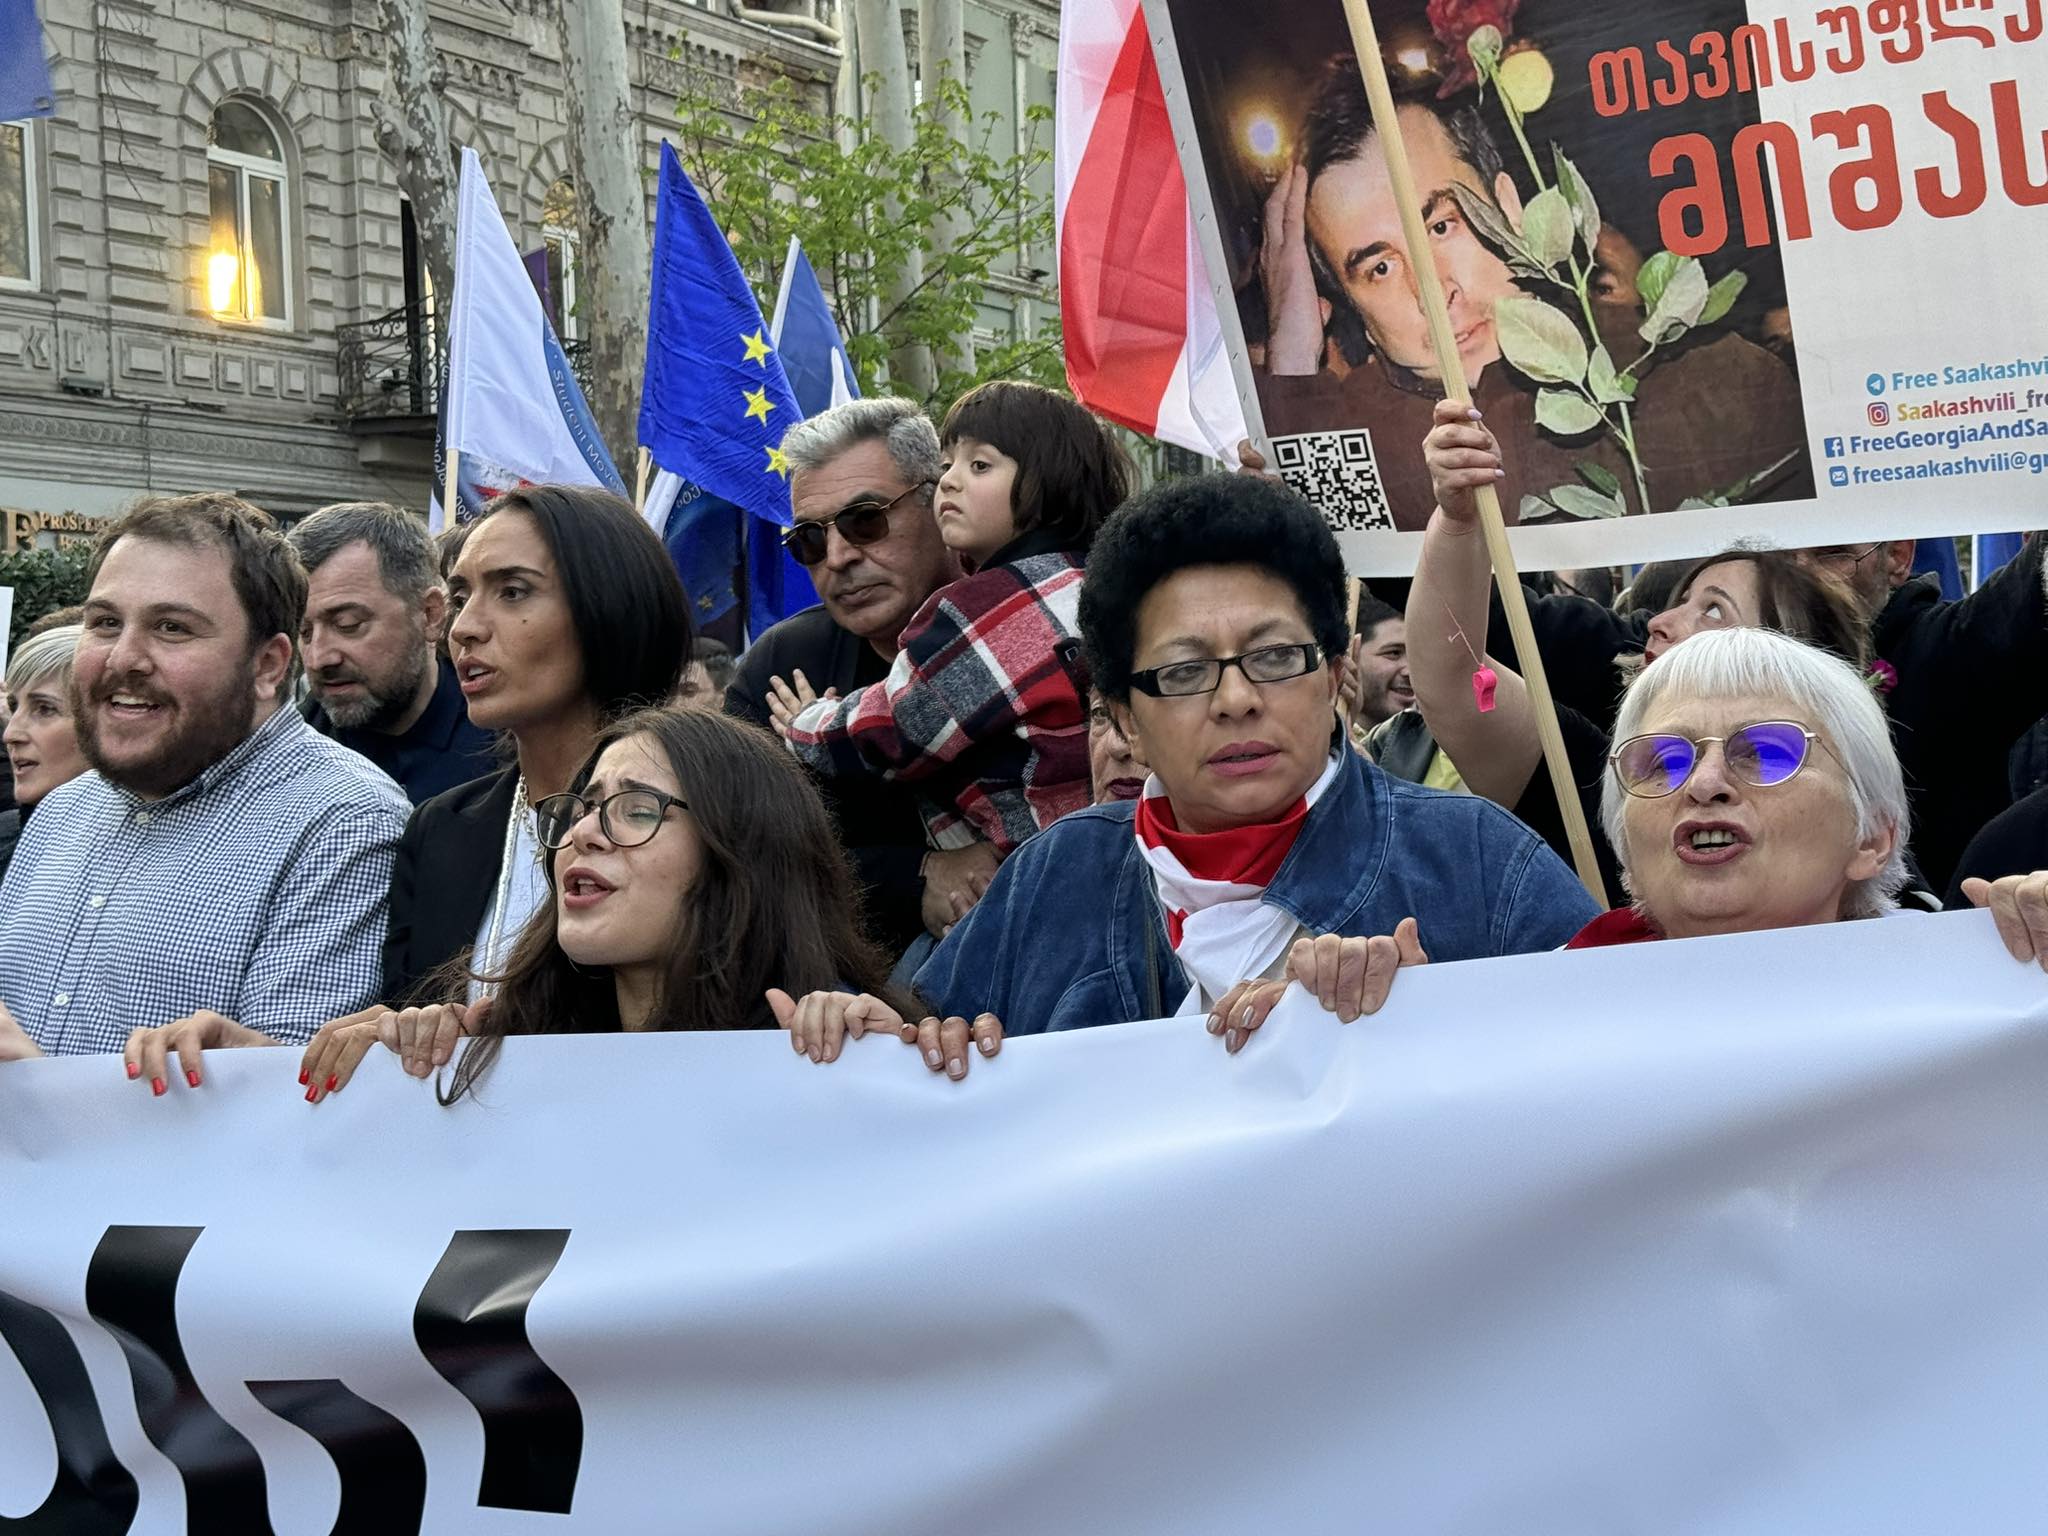 akcia 10 новости акция протеста, Грузинская мечта, закон об иноагентах в грузии, Марш свободы